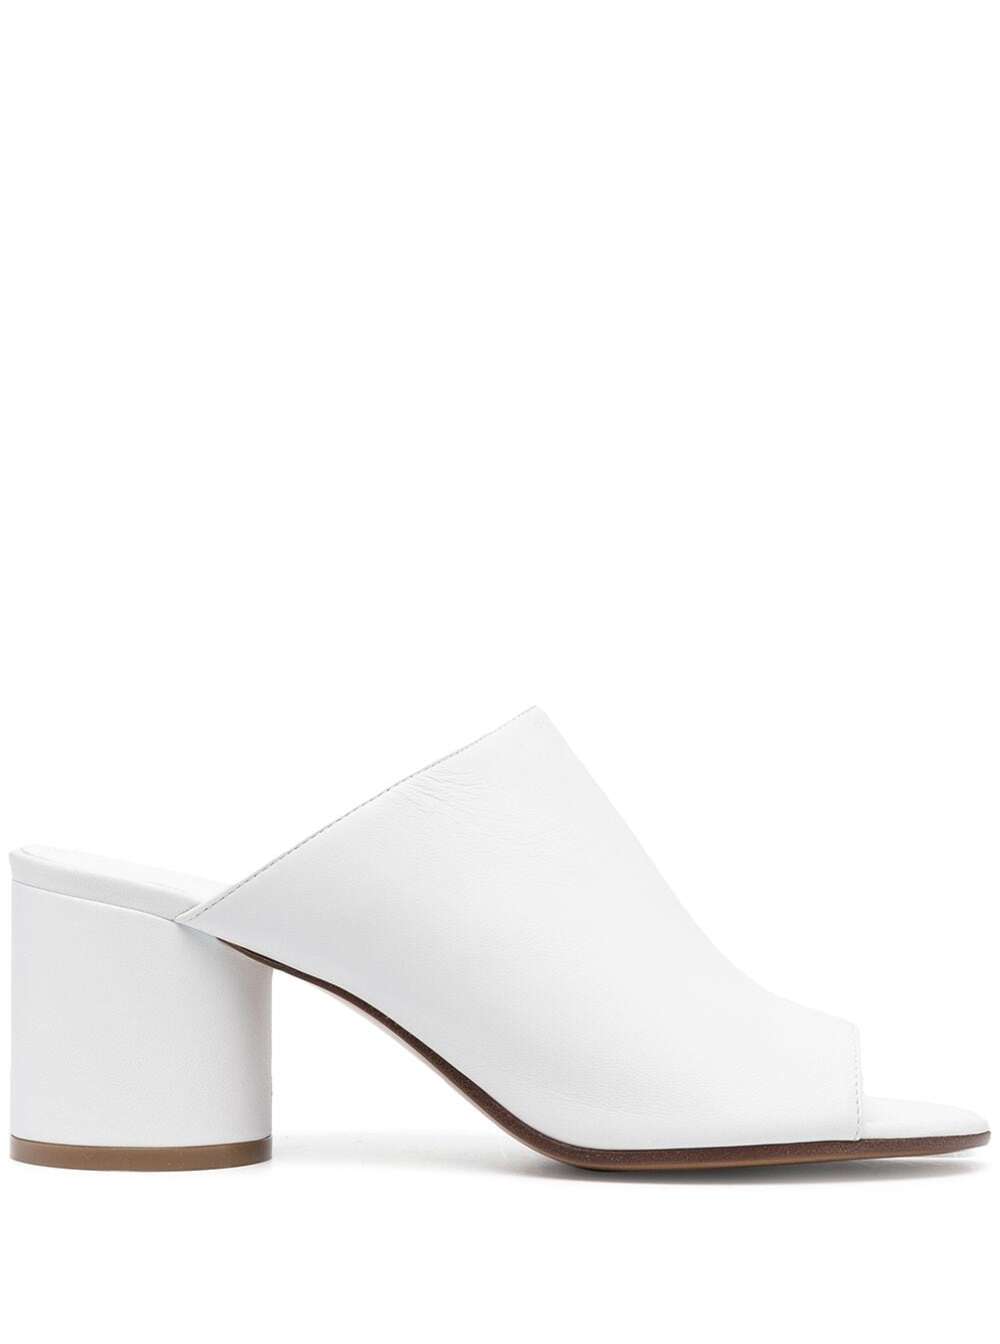 Maison Margiela Hannah Slide Sandal In White | ModeSens